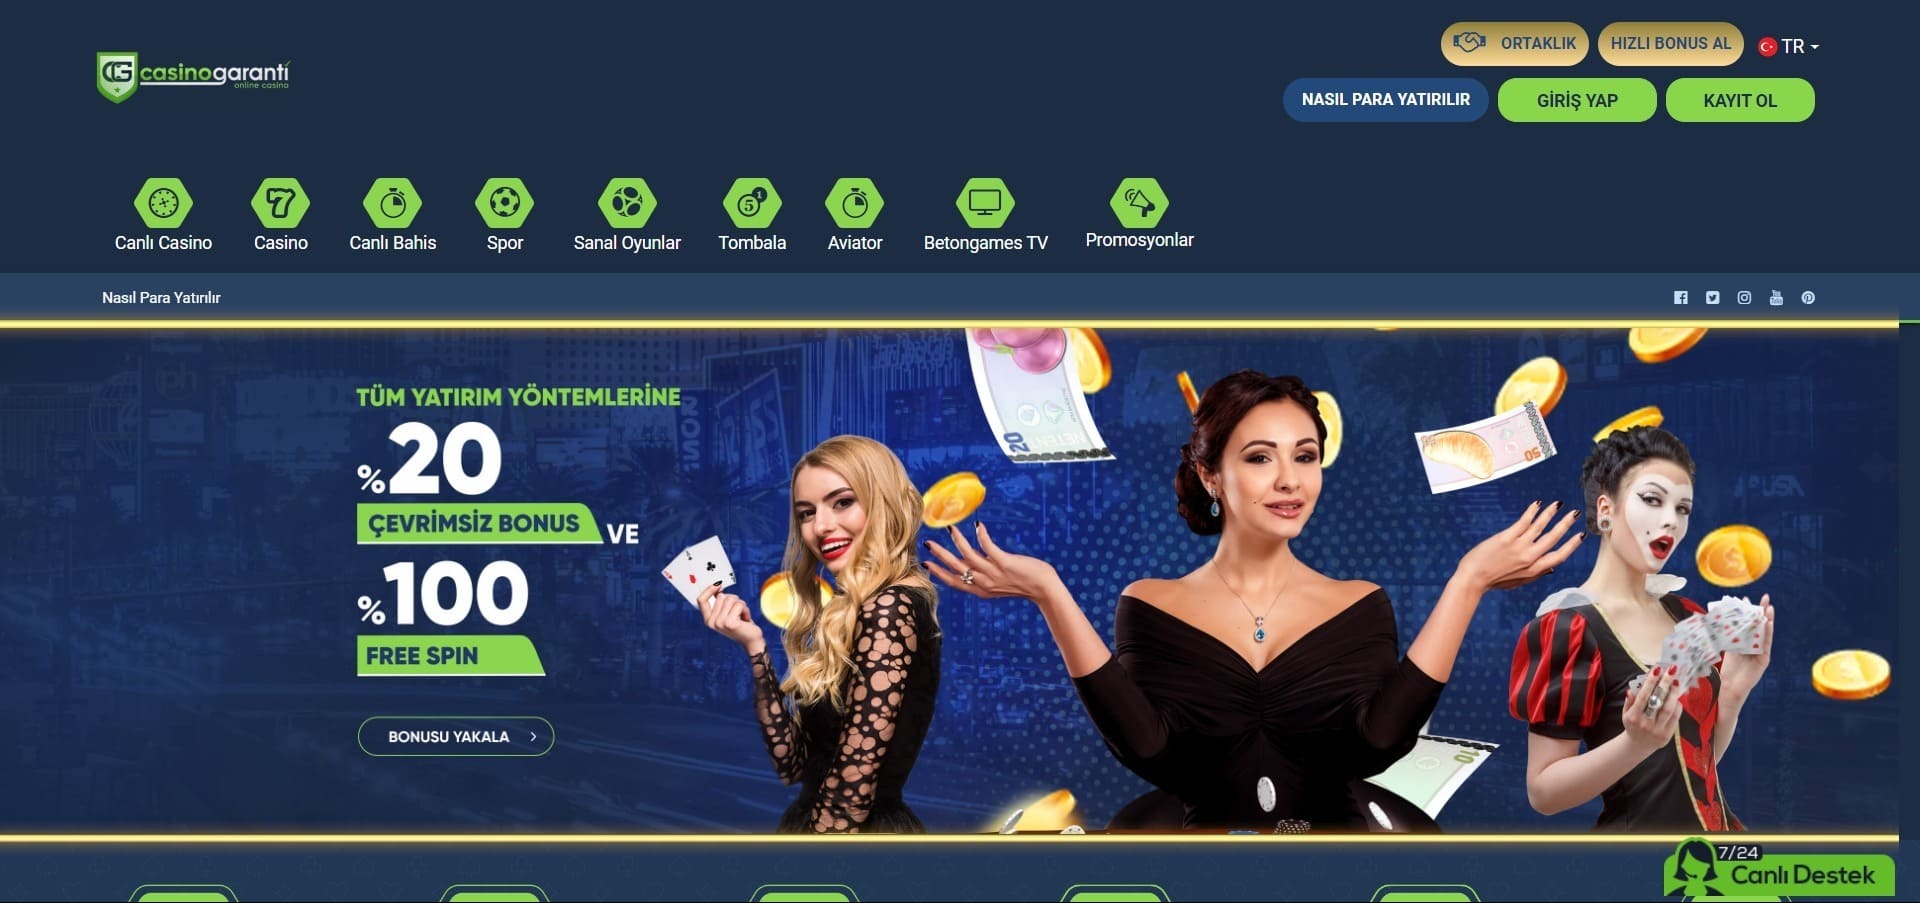 Casino Garanti'nun resmi web sitesi